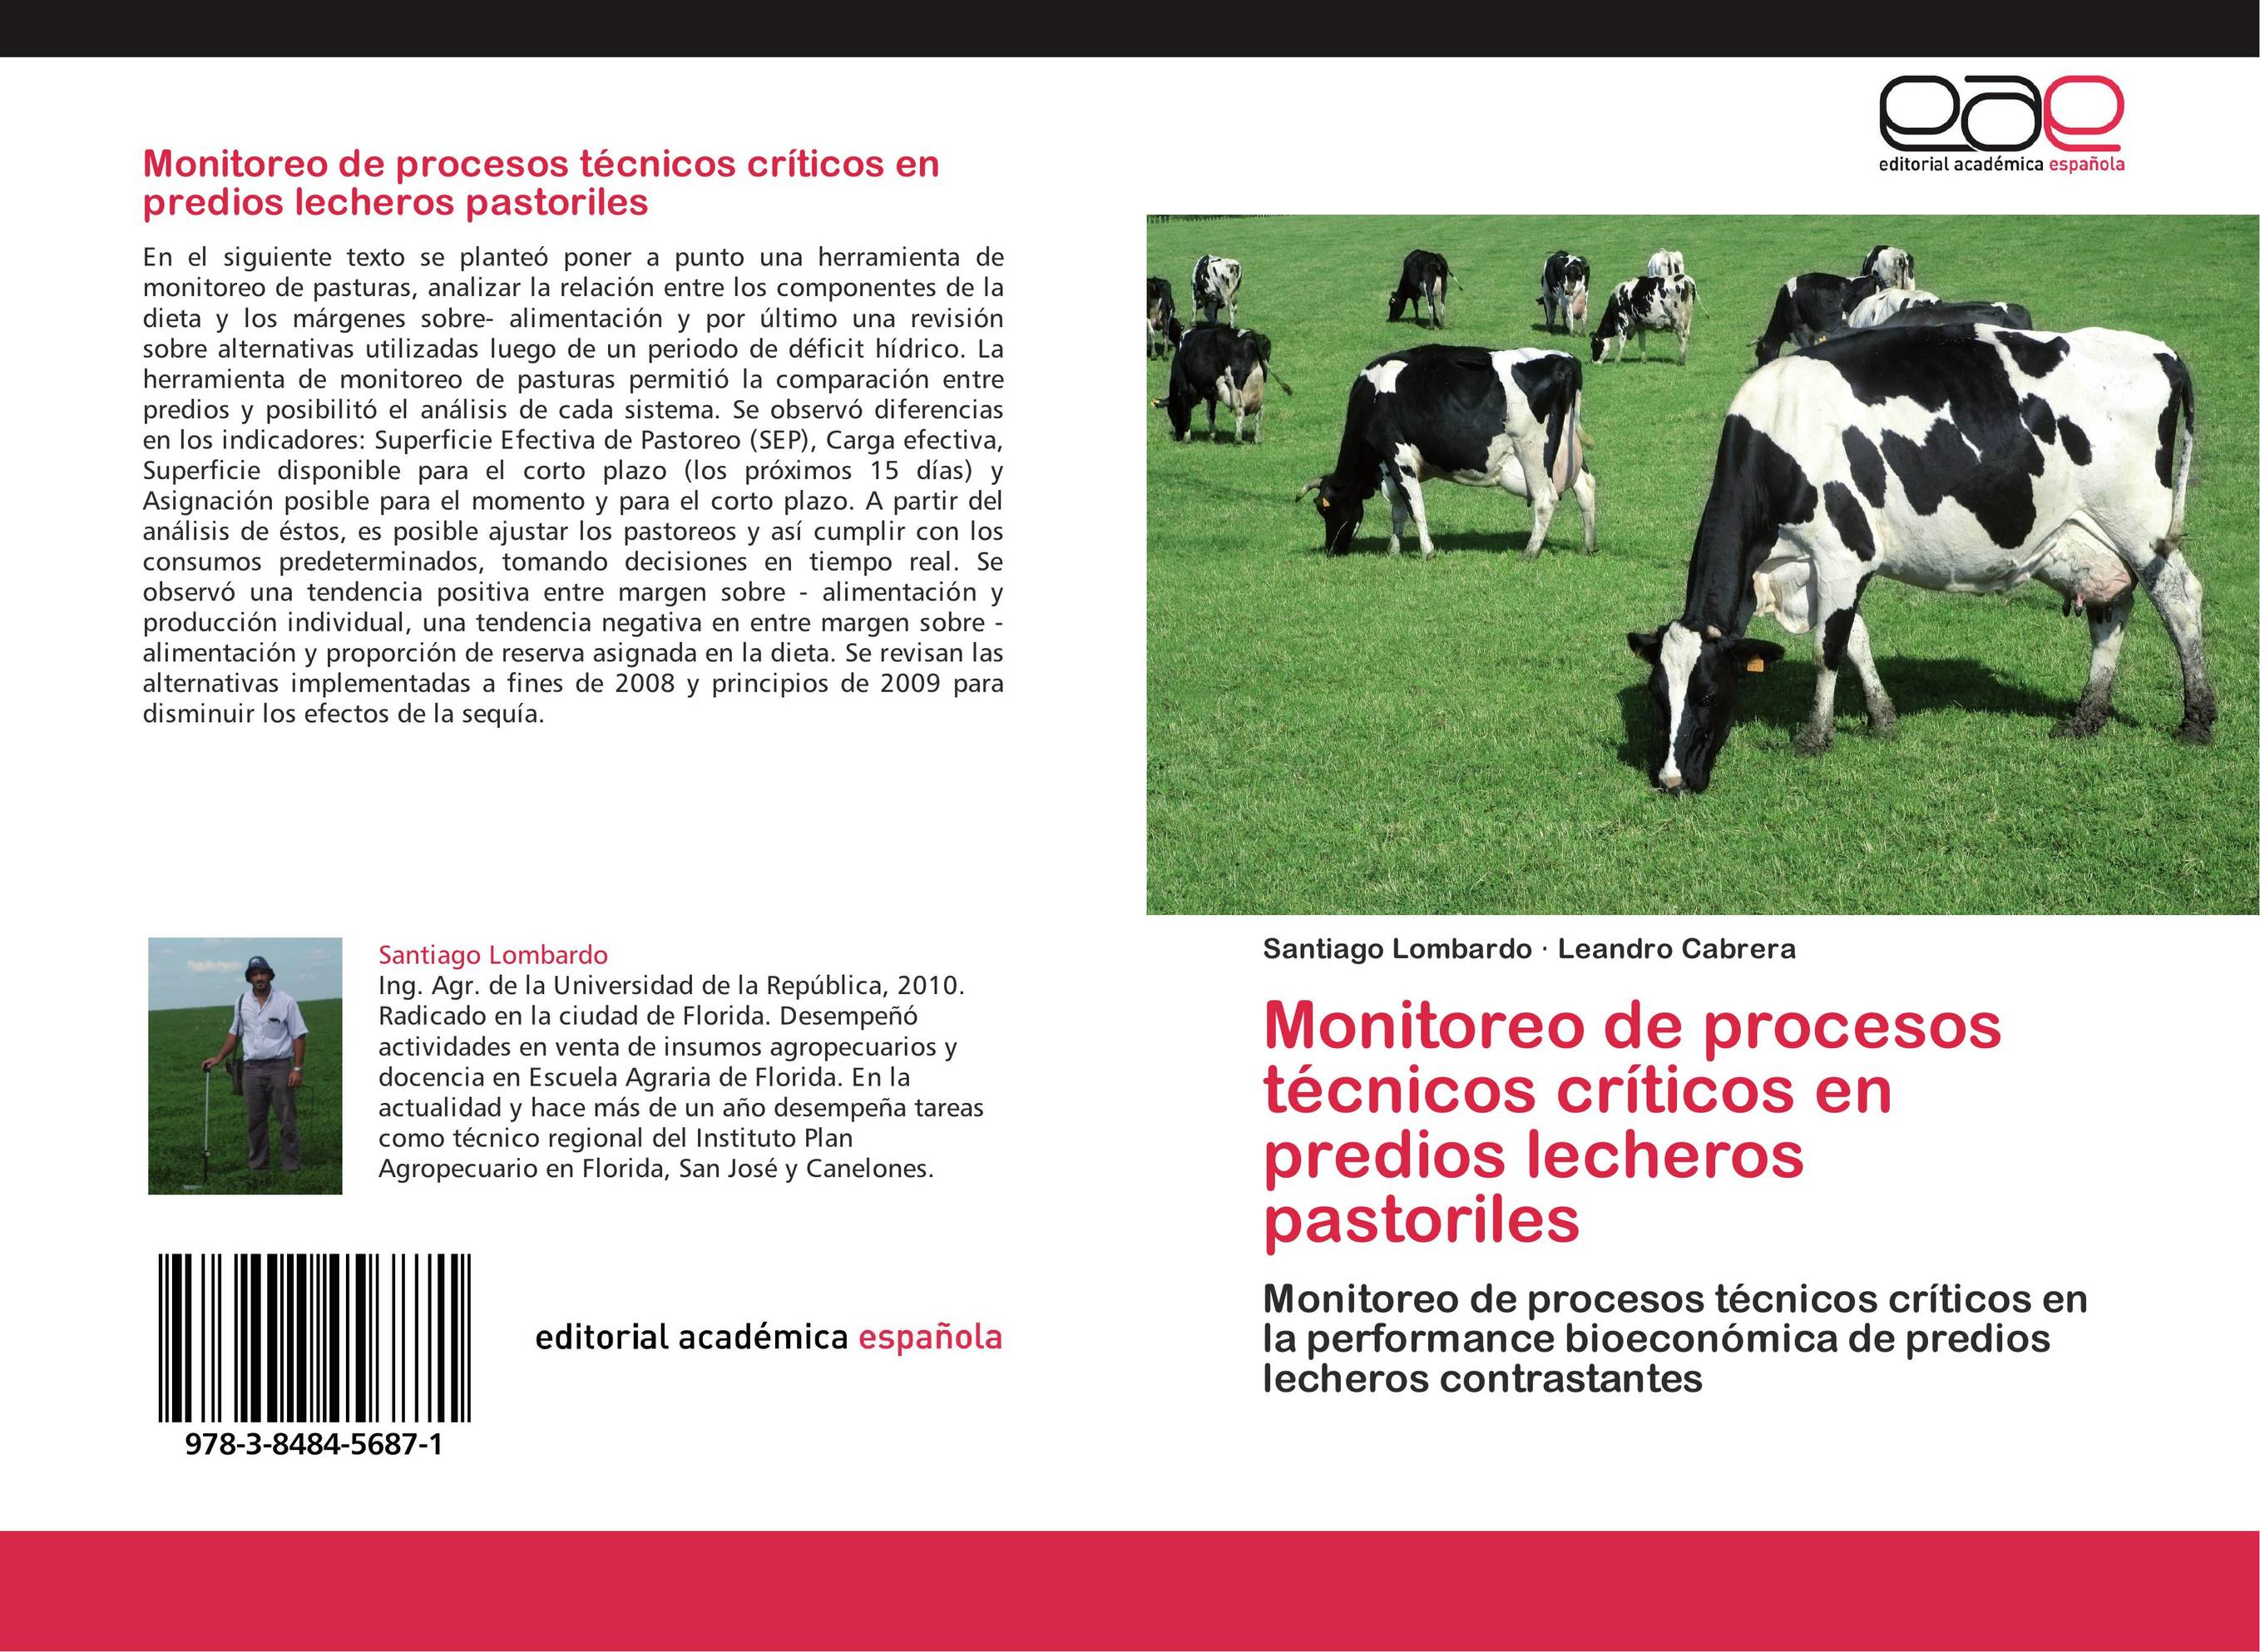 Monitoreo de procesos técnicos críticos en predios lecheros pastoriles